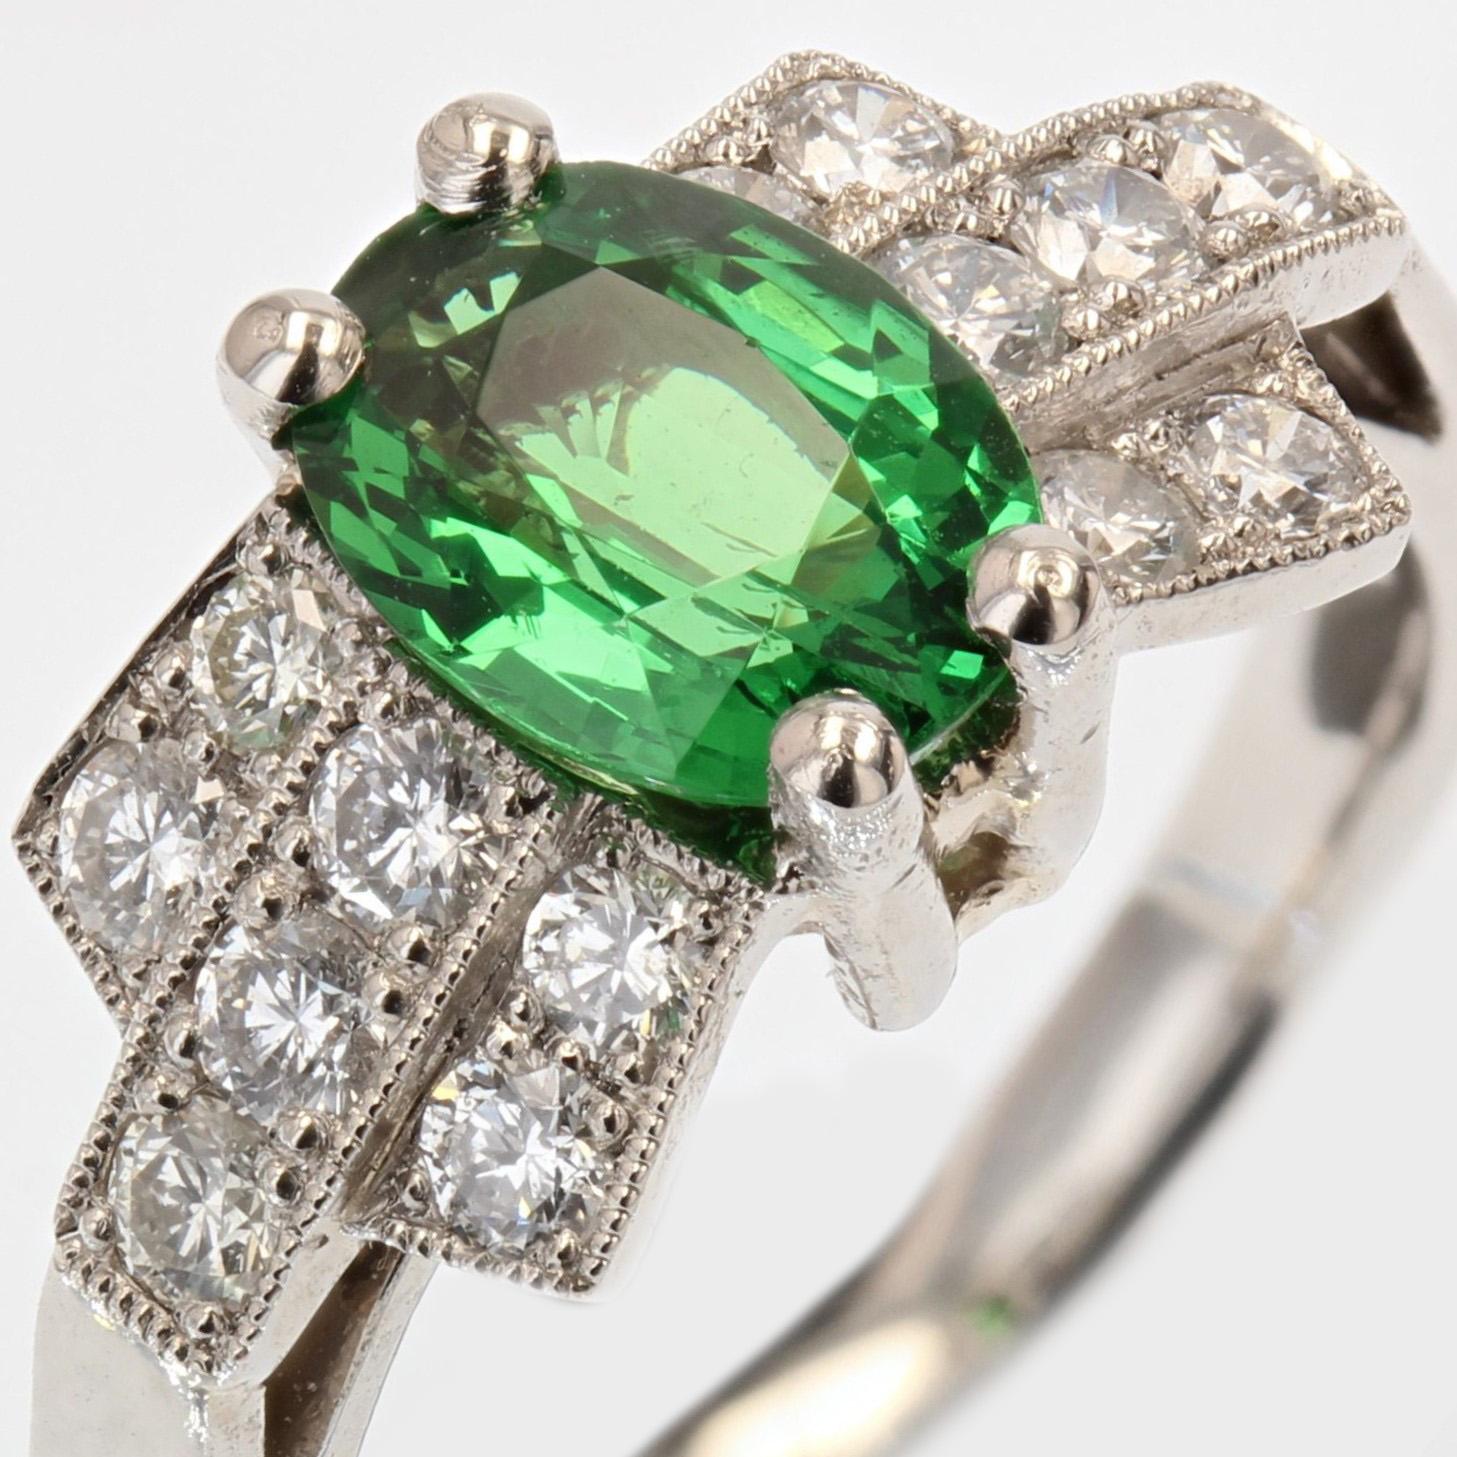 French Modern Art Deco Style Tsavorite Garnet Diamonds Platinum Ring For Sale 3